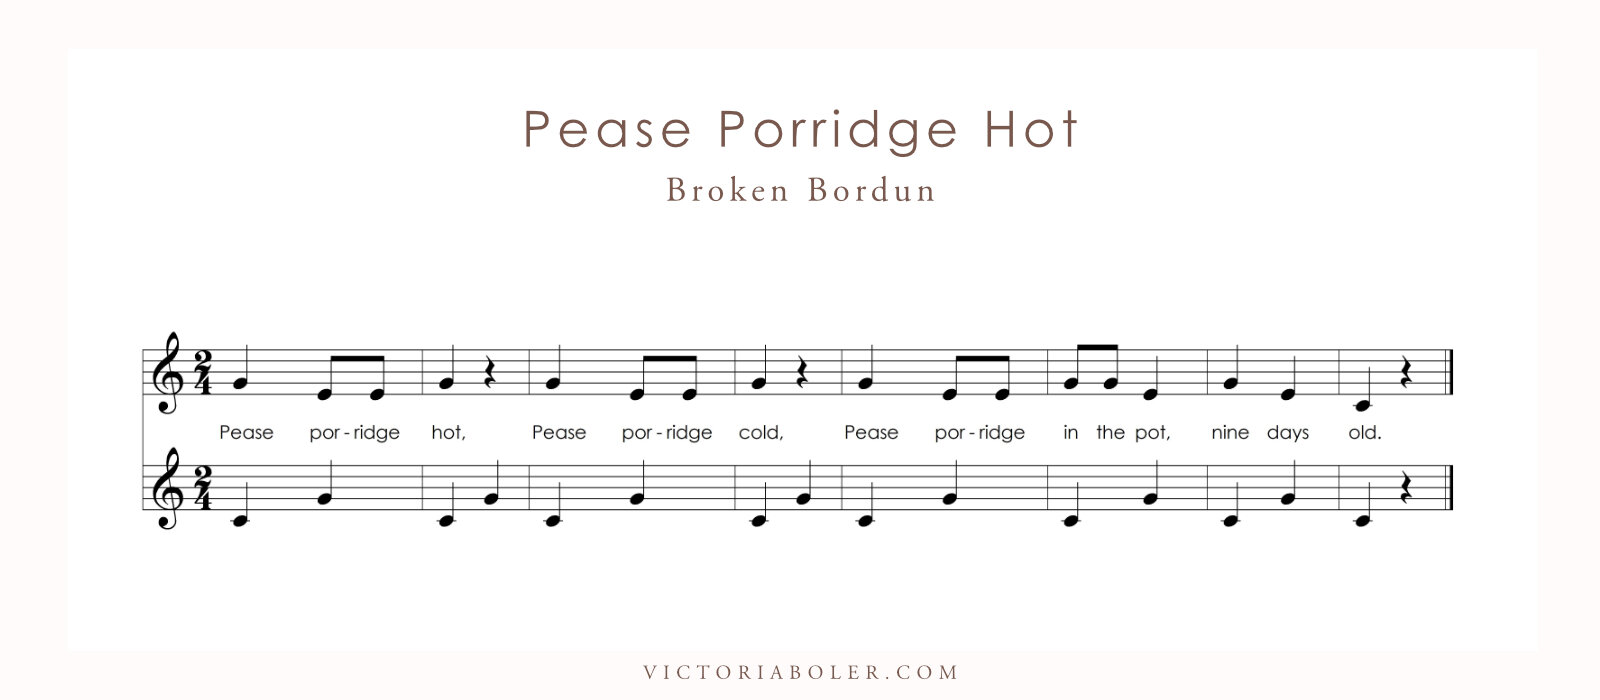 Pease Porridge Hot Broken Bordun